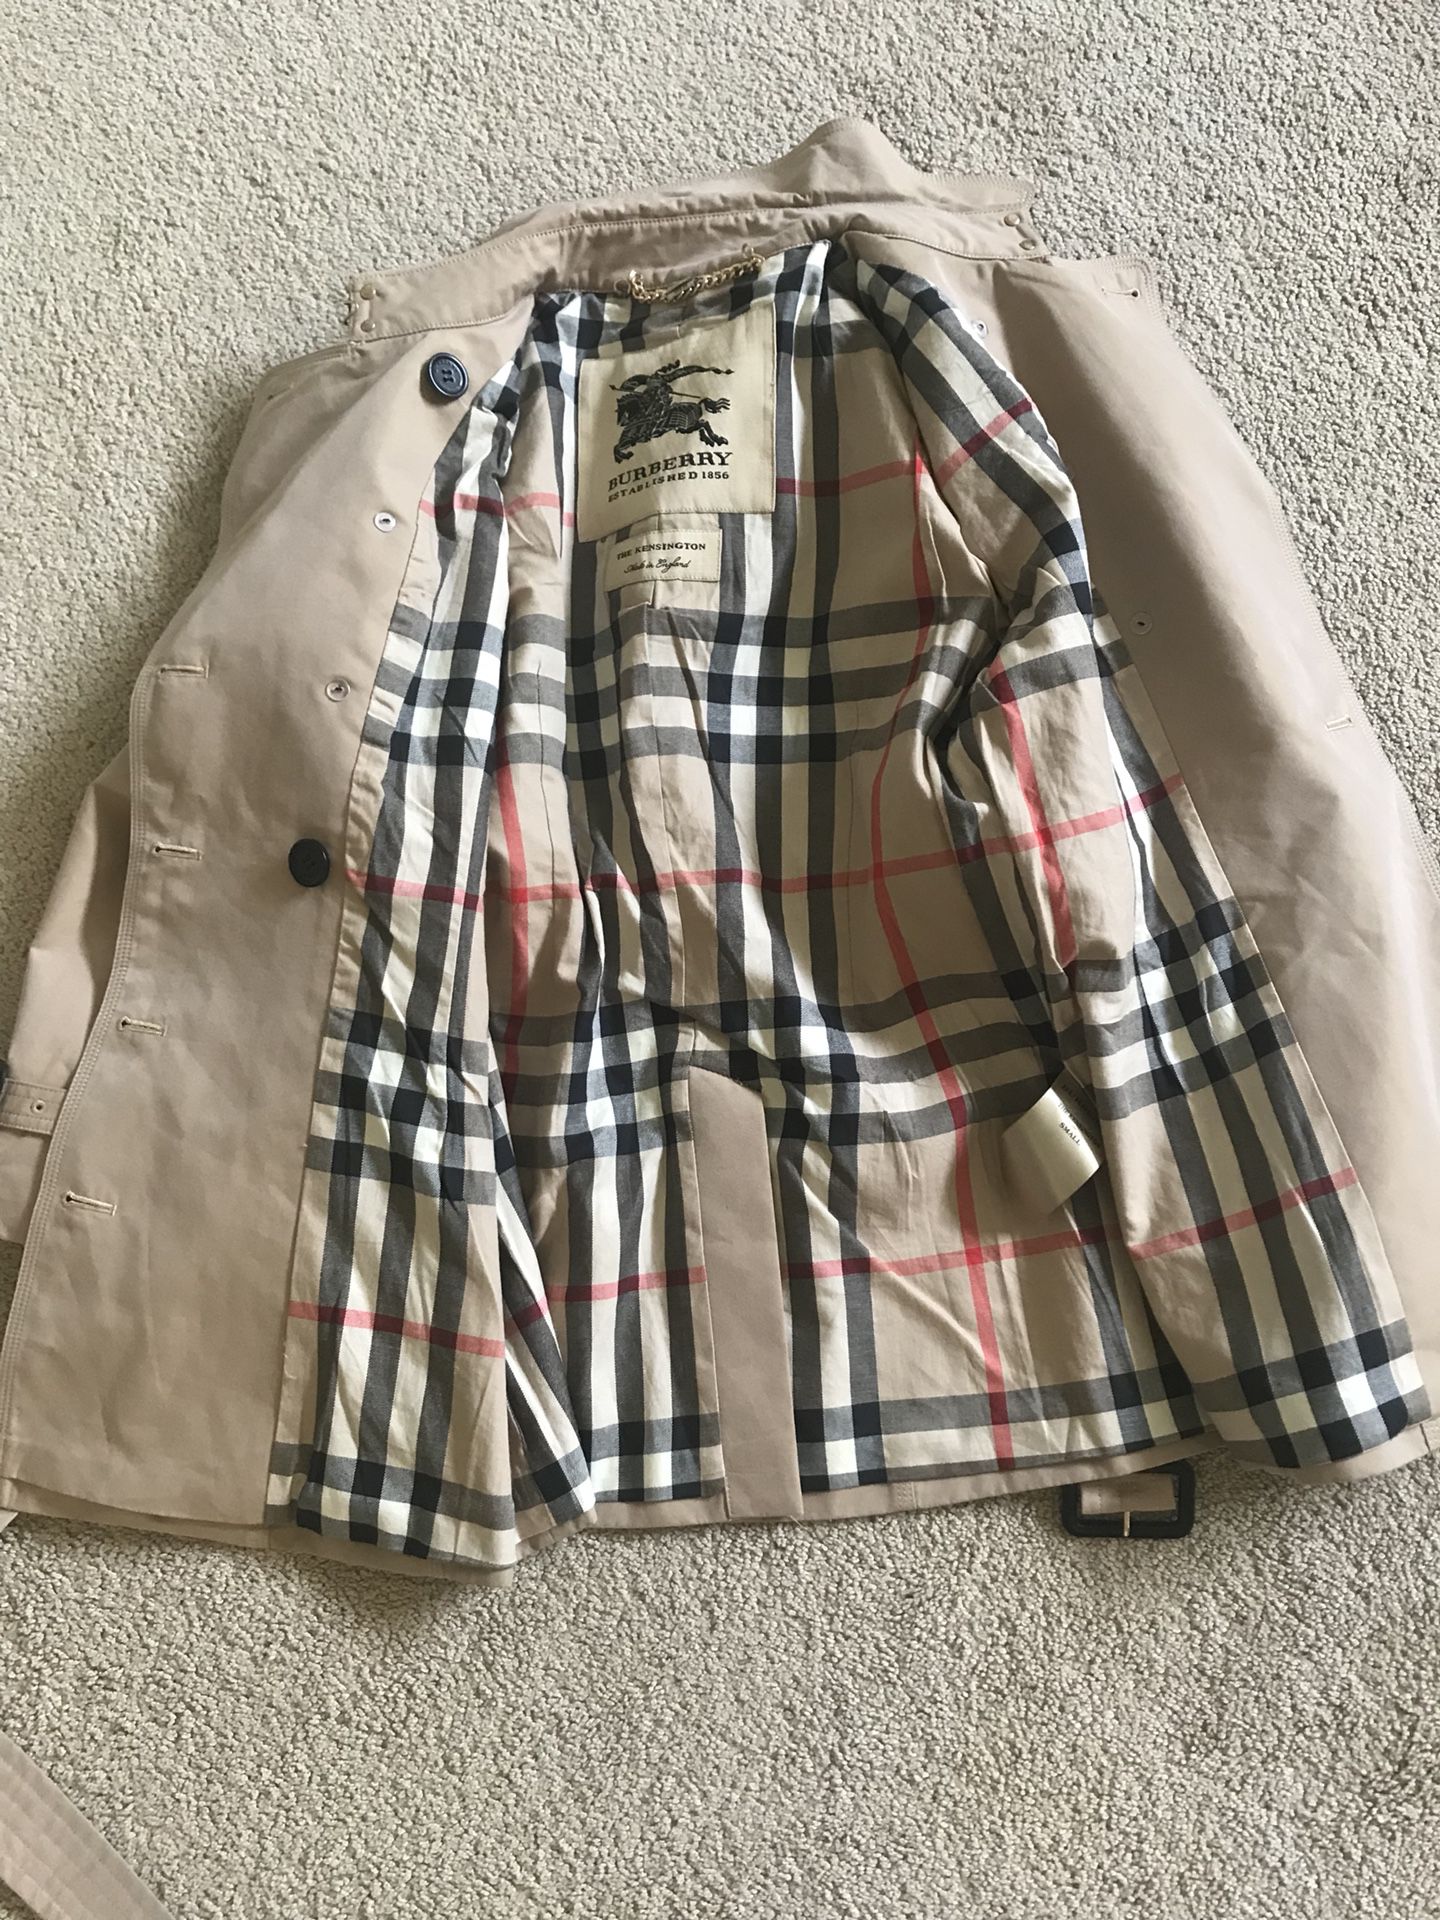 Burberry coat (size US 34)